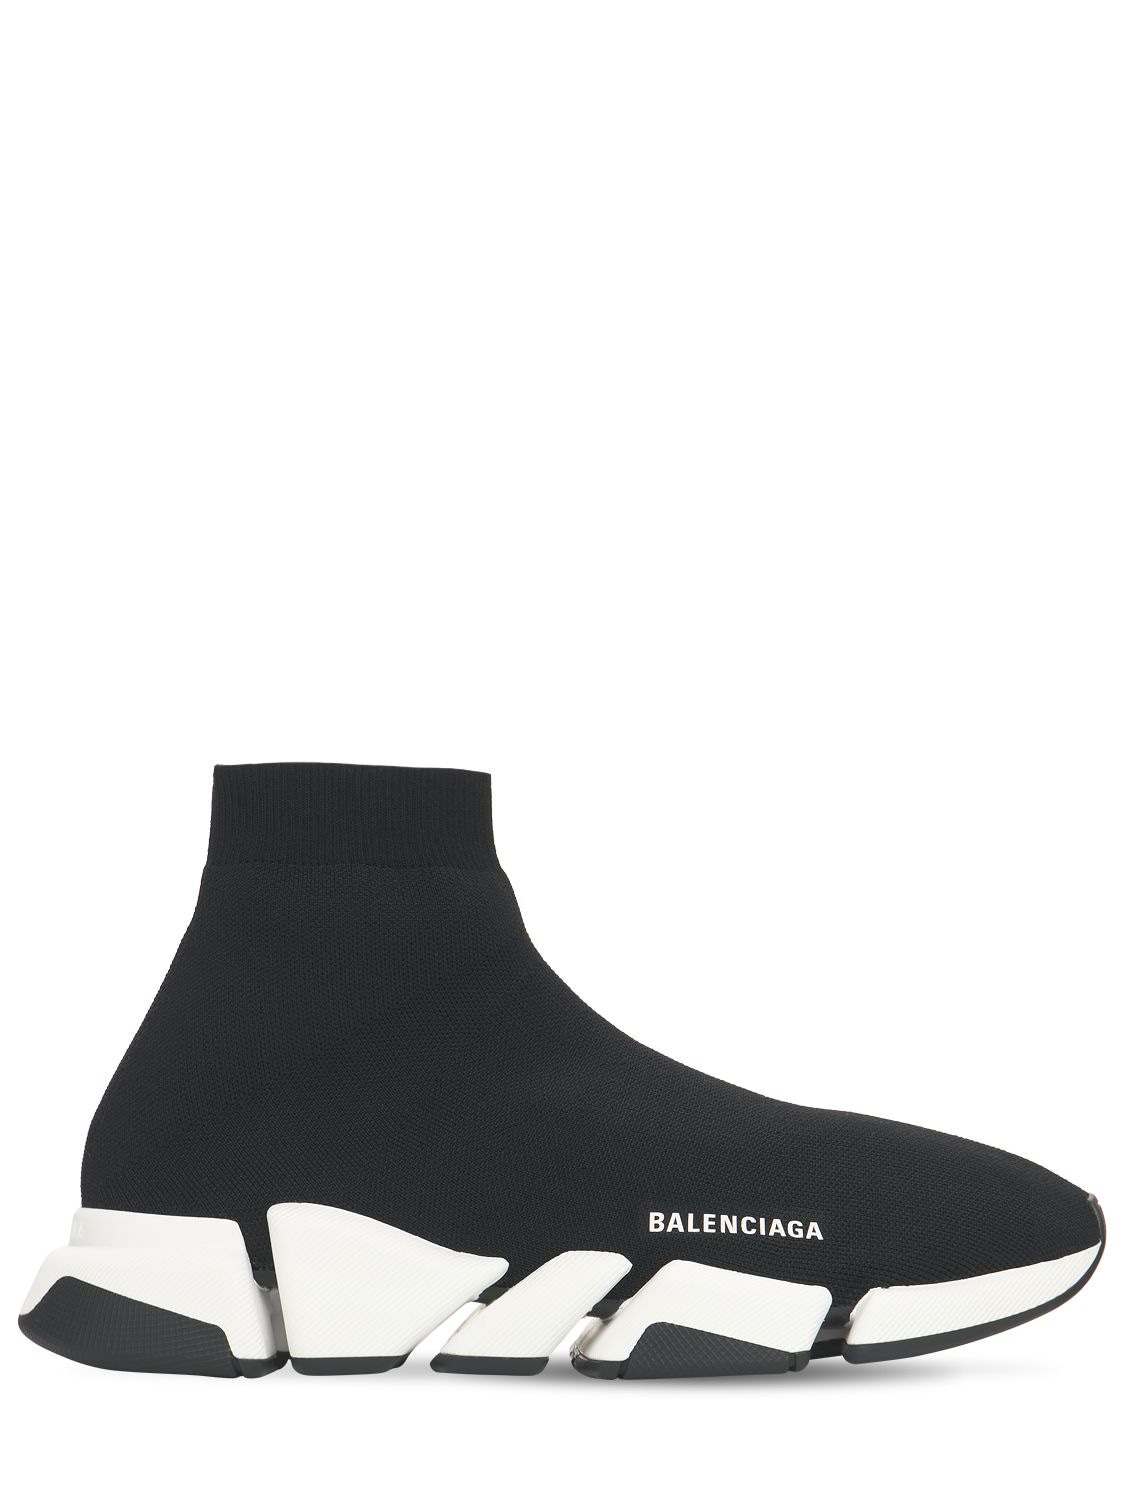 Balenciaga - Speed 2.0 knit sport sneakers - Black/White | Luisaviaroma